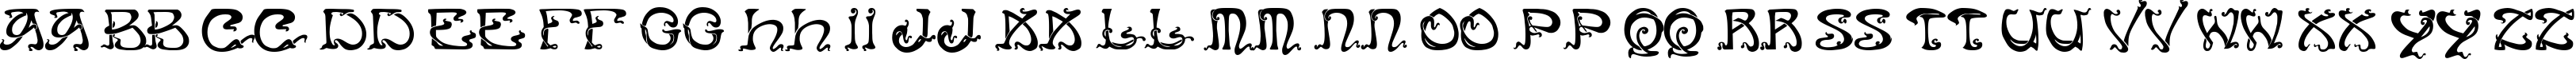 Пример написания английского алфавита шрифтом Art Nouveau Caps